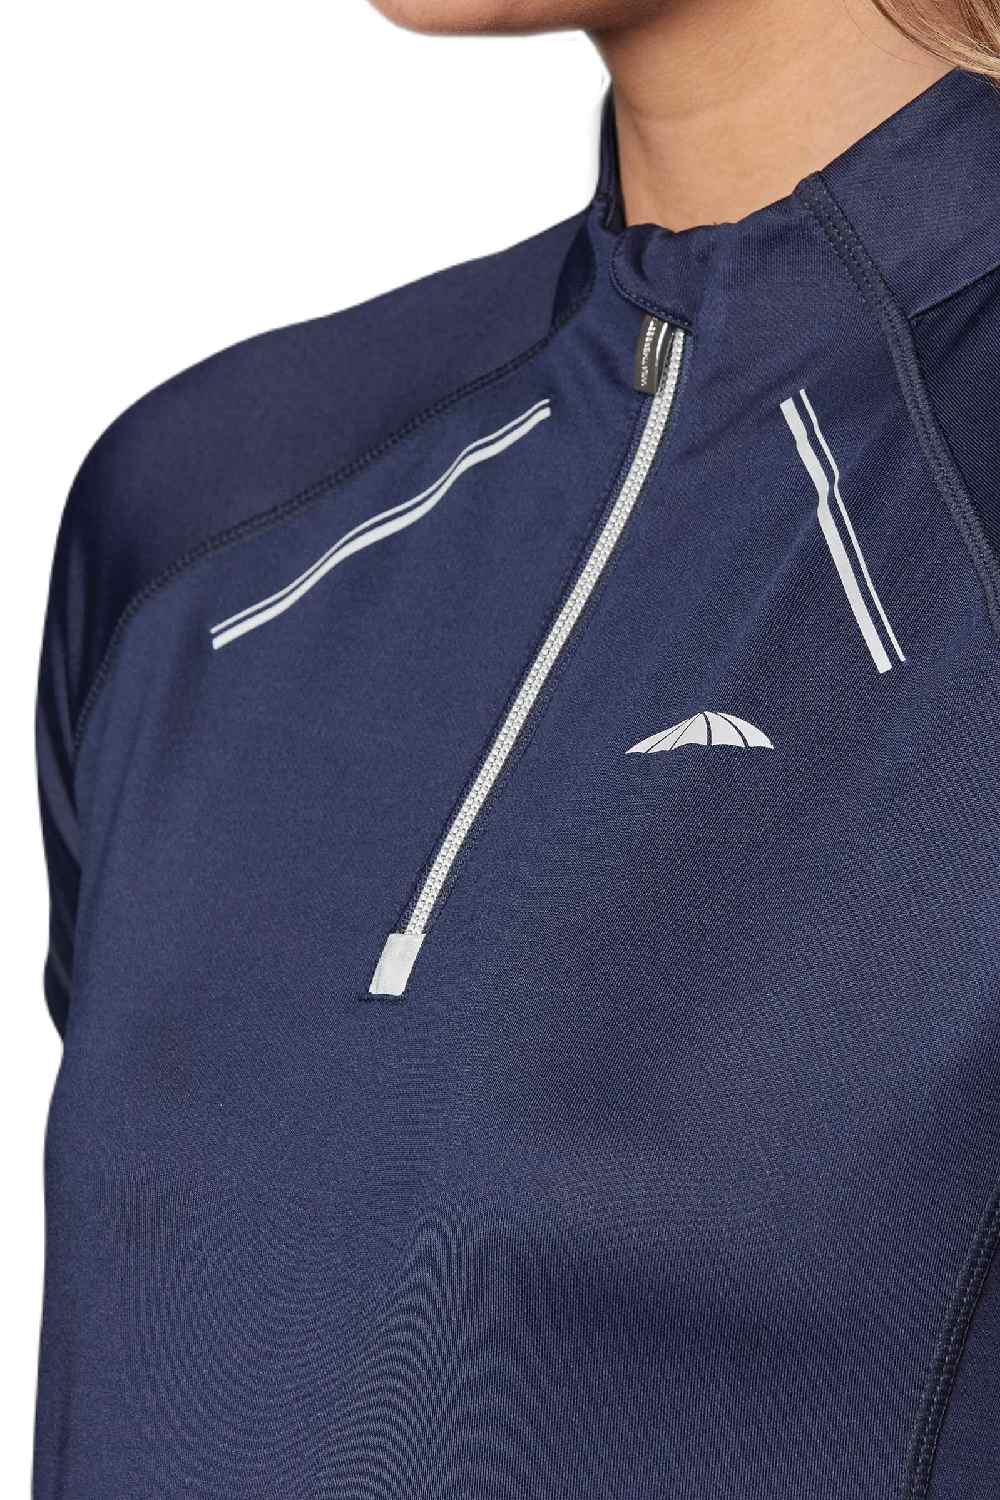 Weatherbeeta Victoria Premium Short Sleeve Top in Navy 